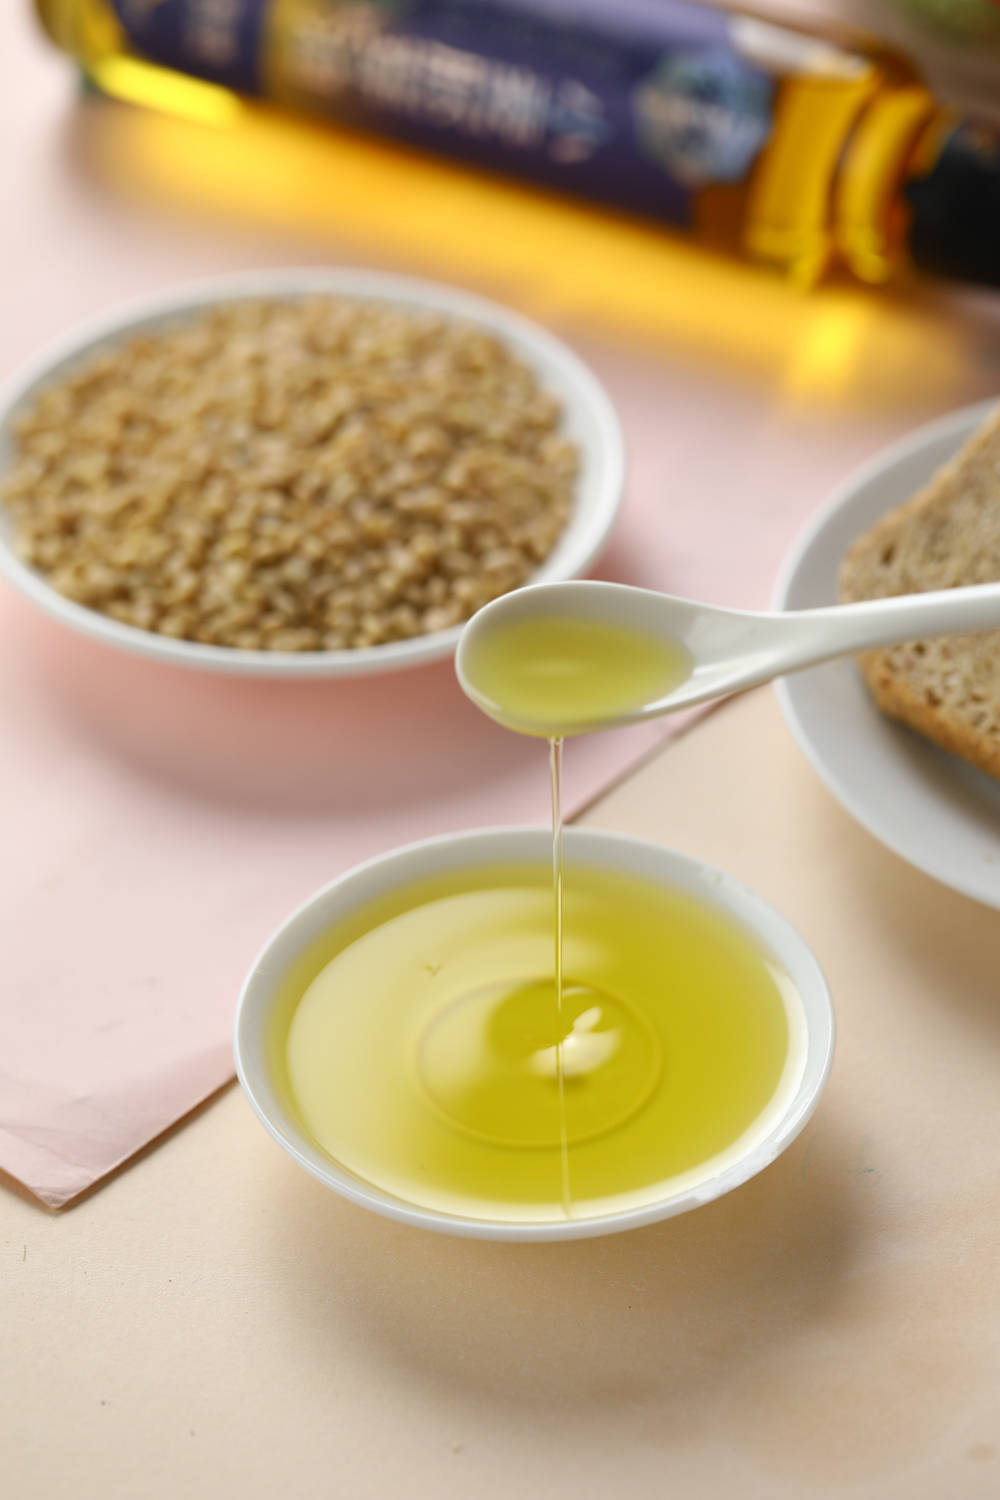 为什么老人和女性更喜欢小麦胚芽油?